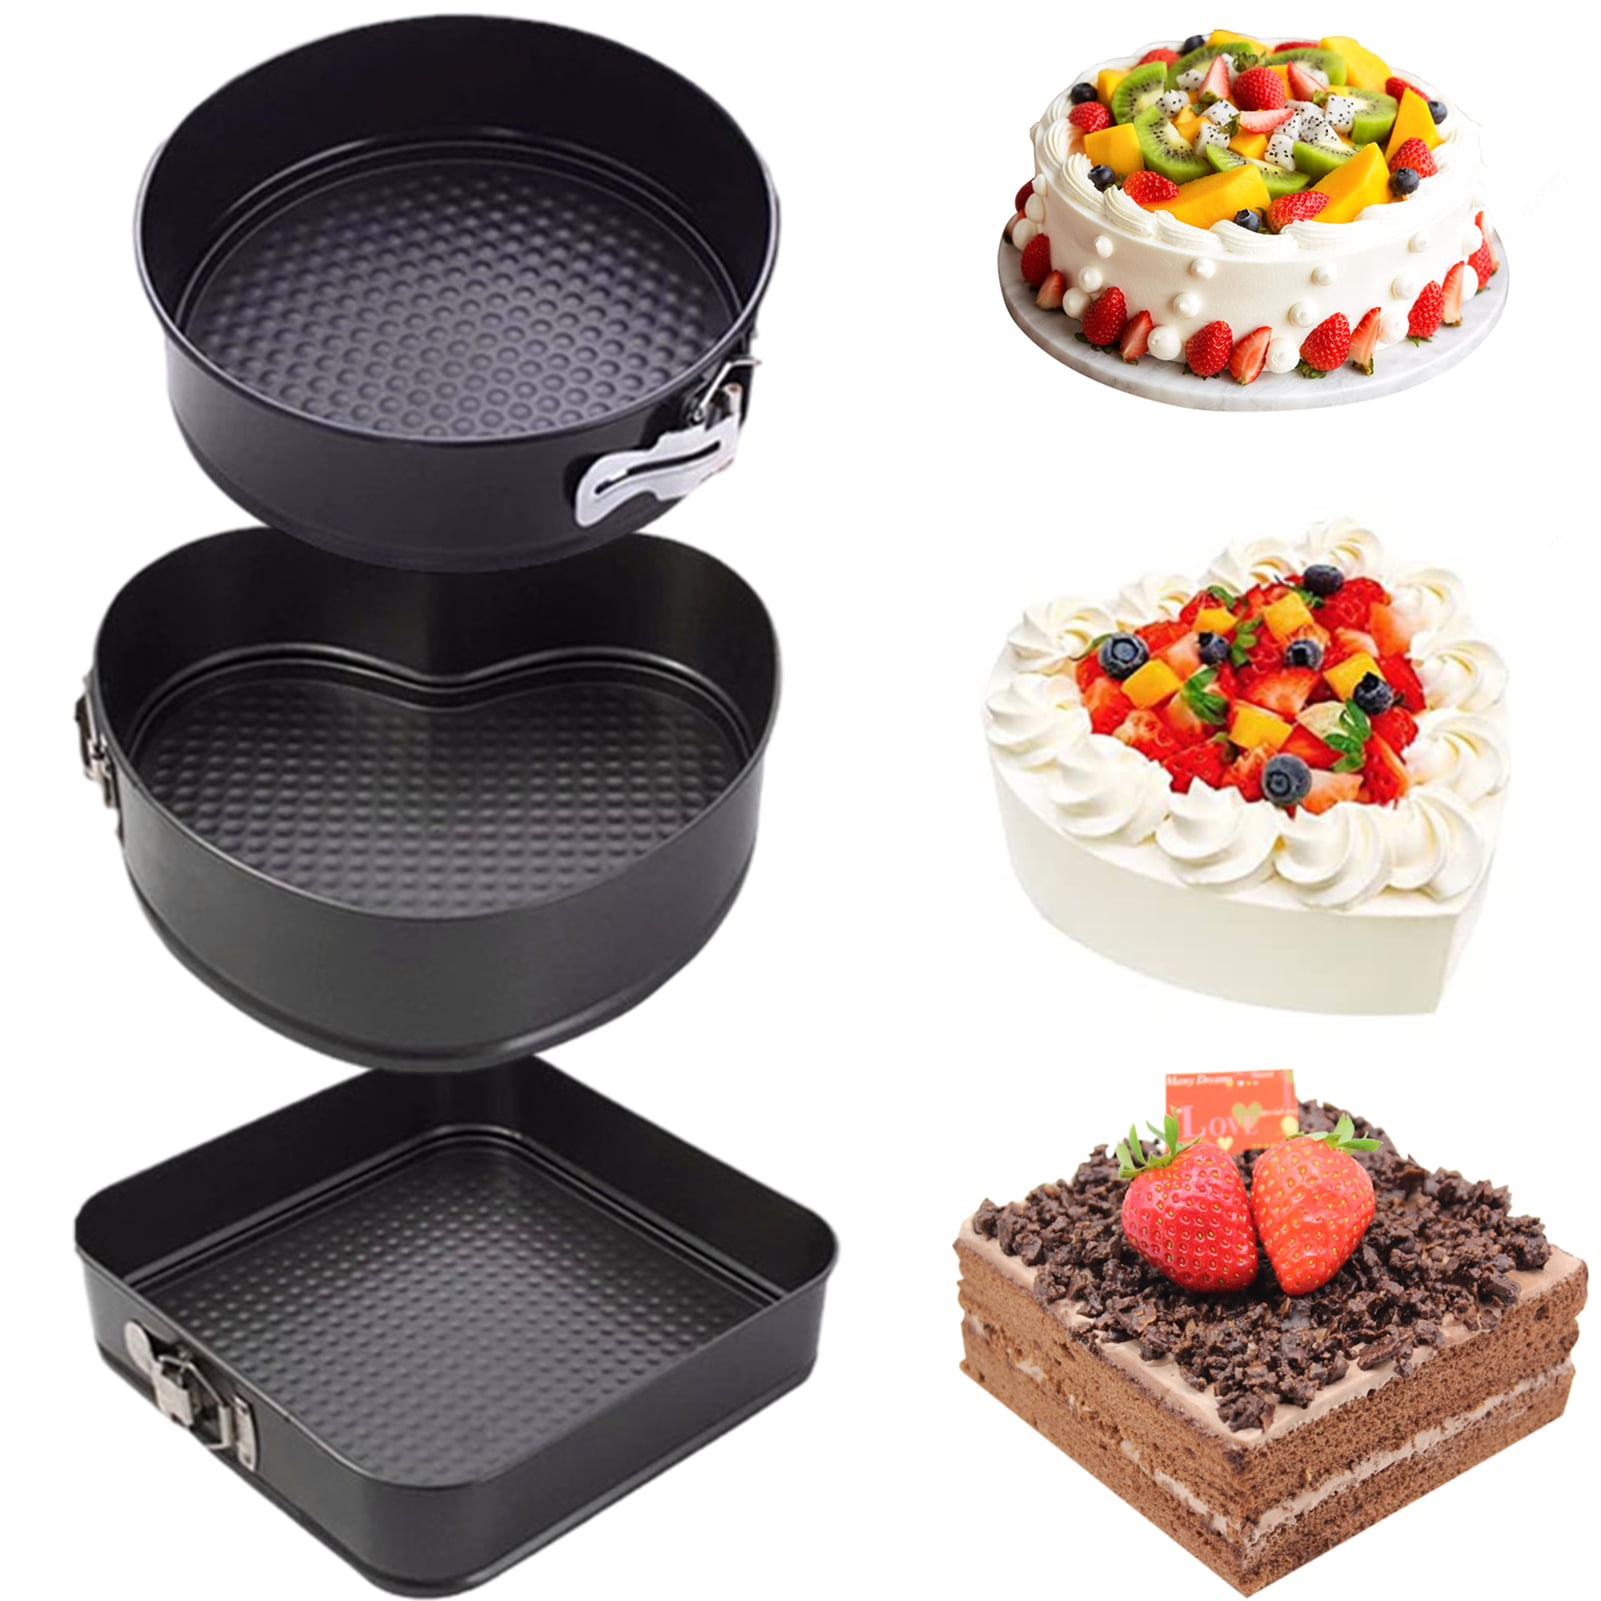 Bakeware Sets & Supplies, Cake Tins, Baking Trays & Tins